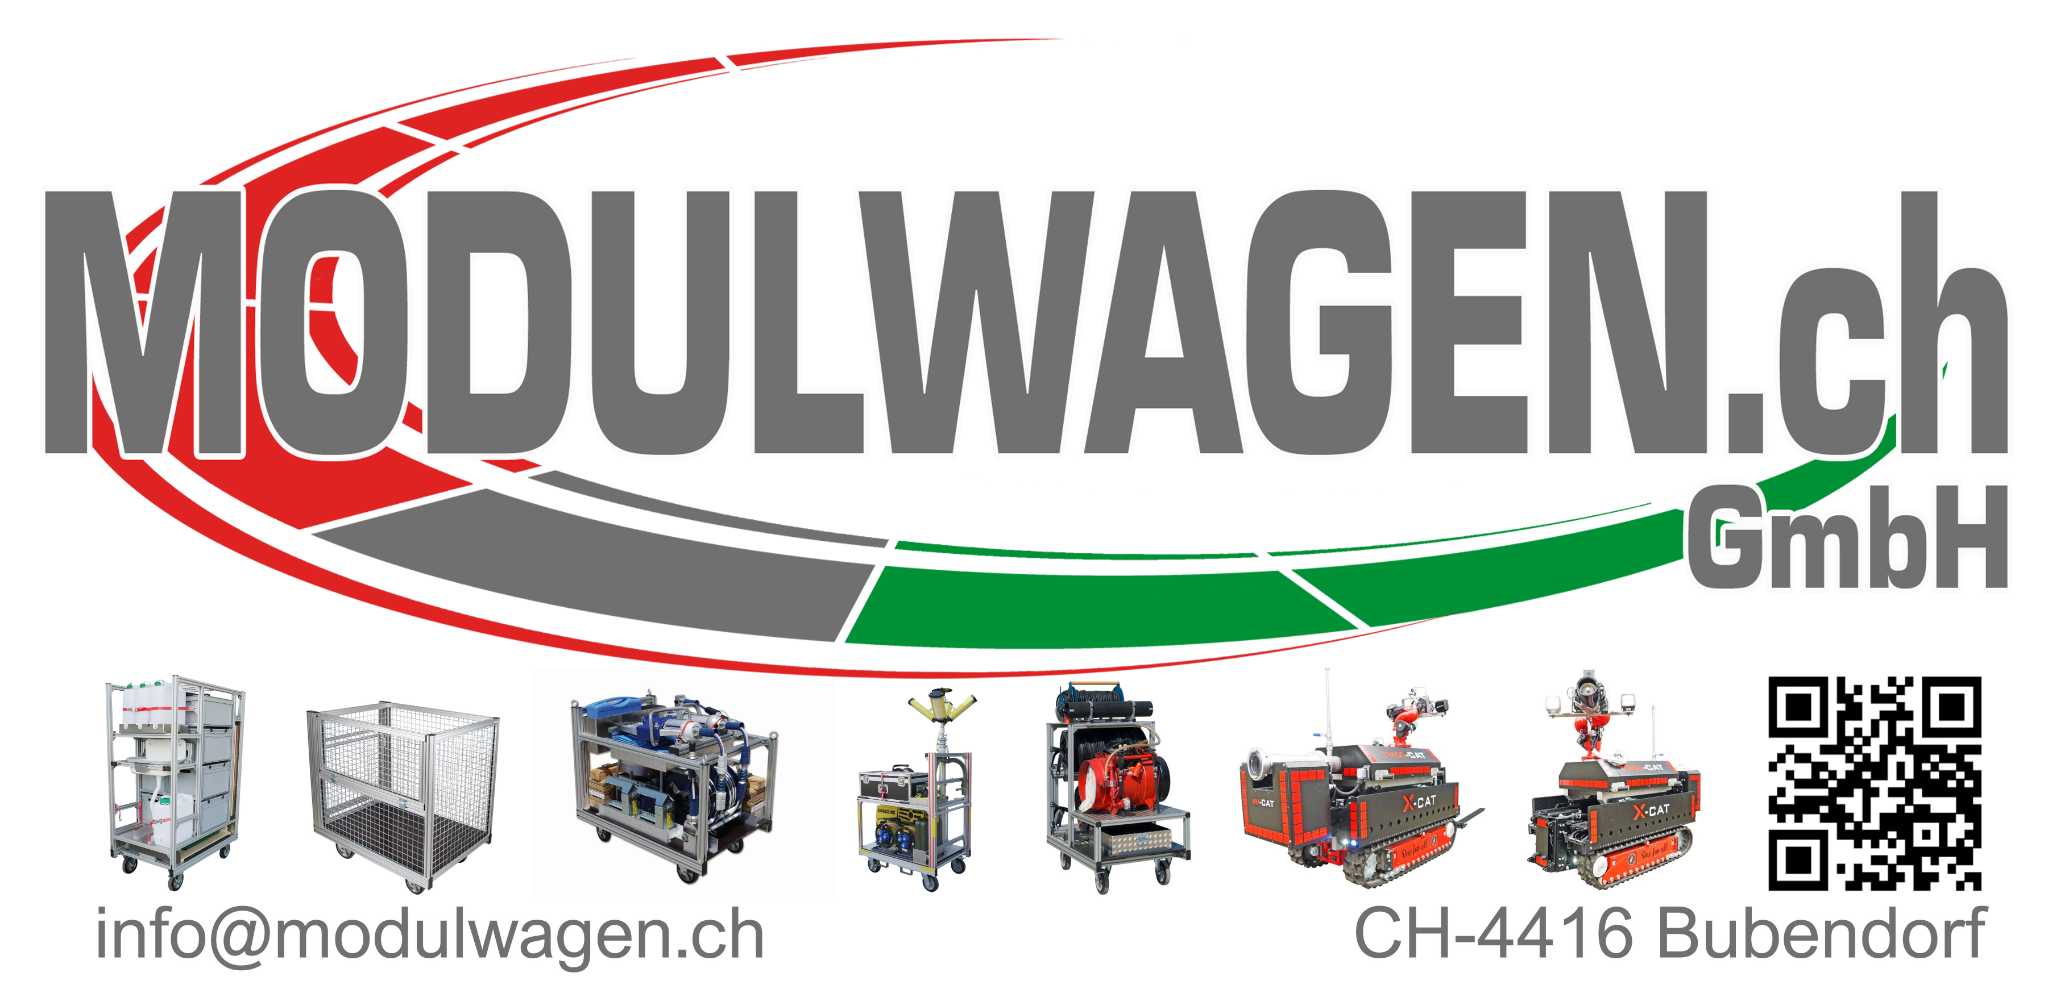 Modulwagen.ch GmbH